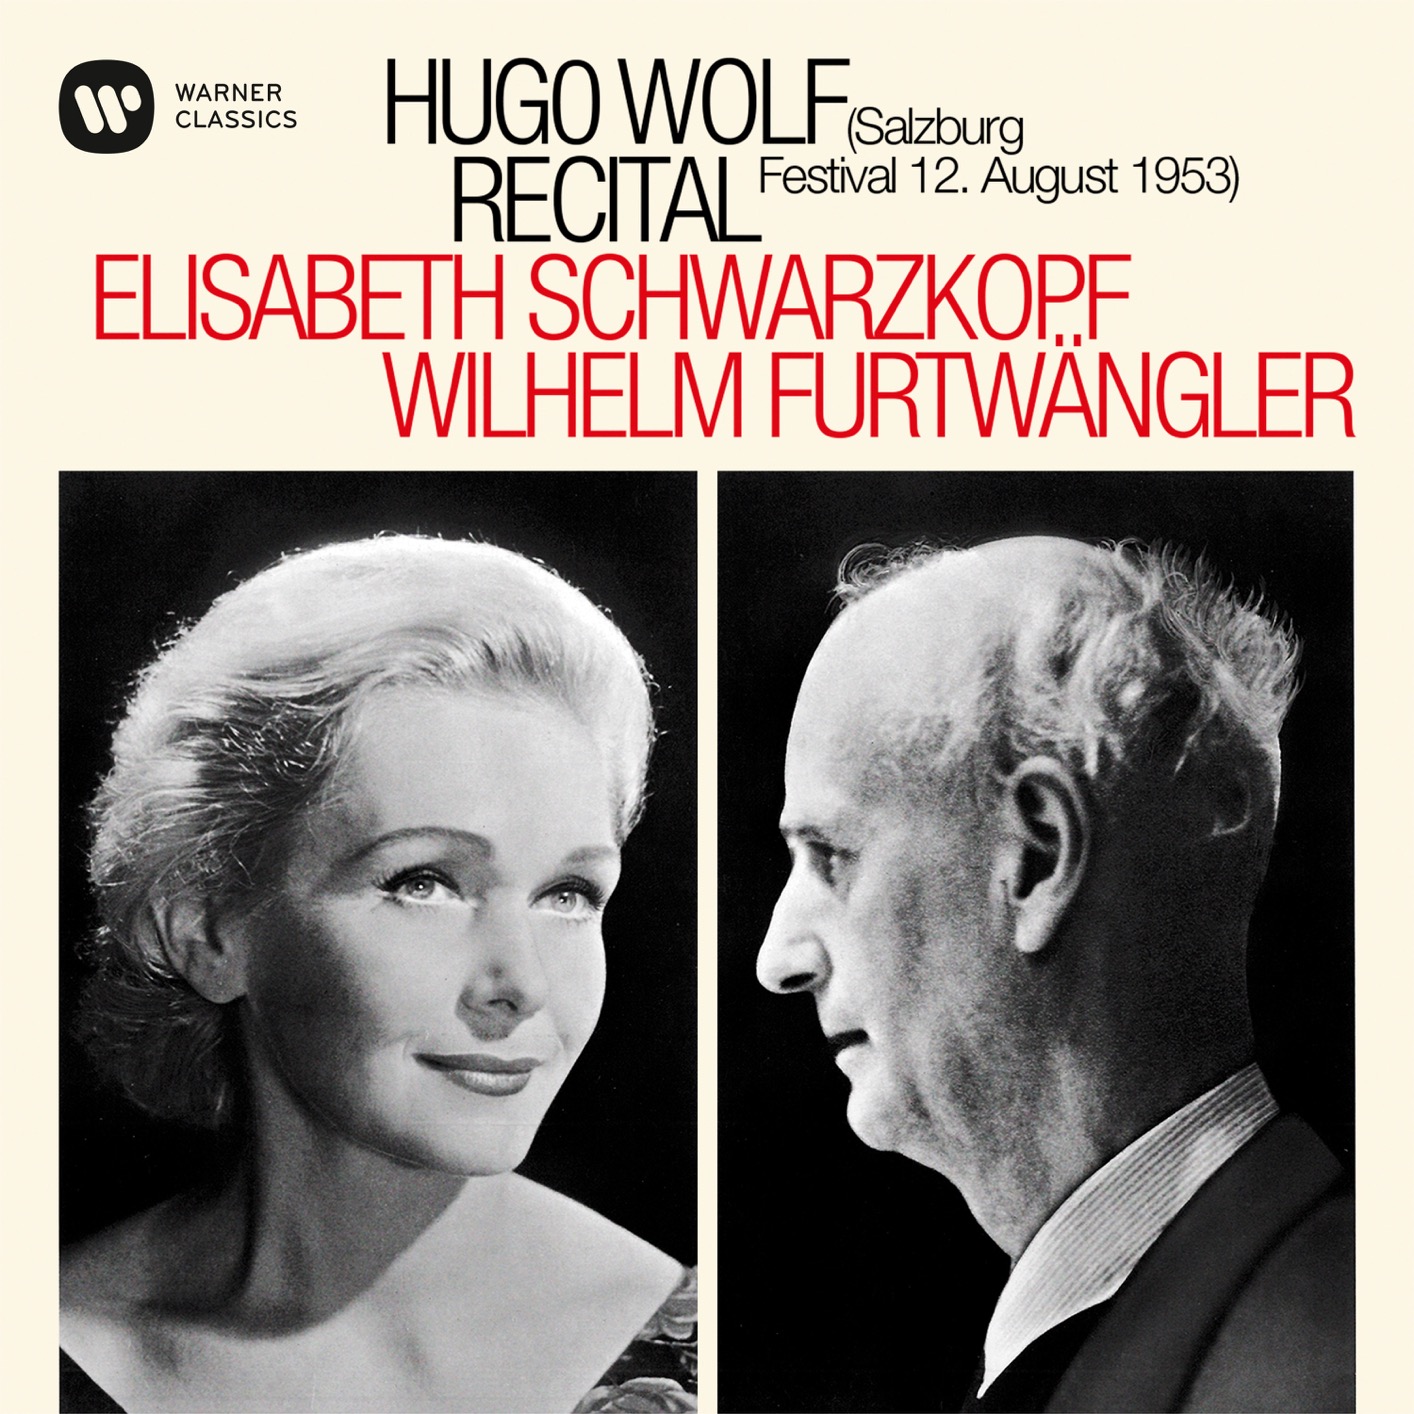 Elisabeth Schwarzkopf & Wilhelm Furtwangler - Hugo Wolf Recital - Salzburg, 12/08/1953 (Mono Remastered) (1969/2019) [FLAC 24bit/96kHz]